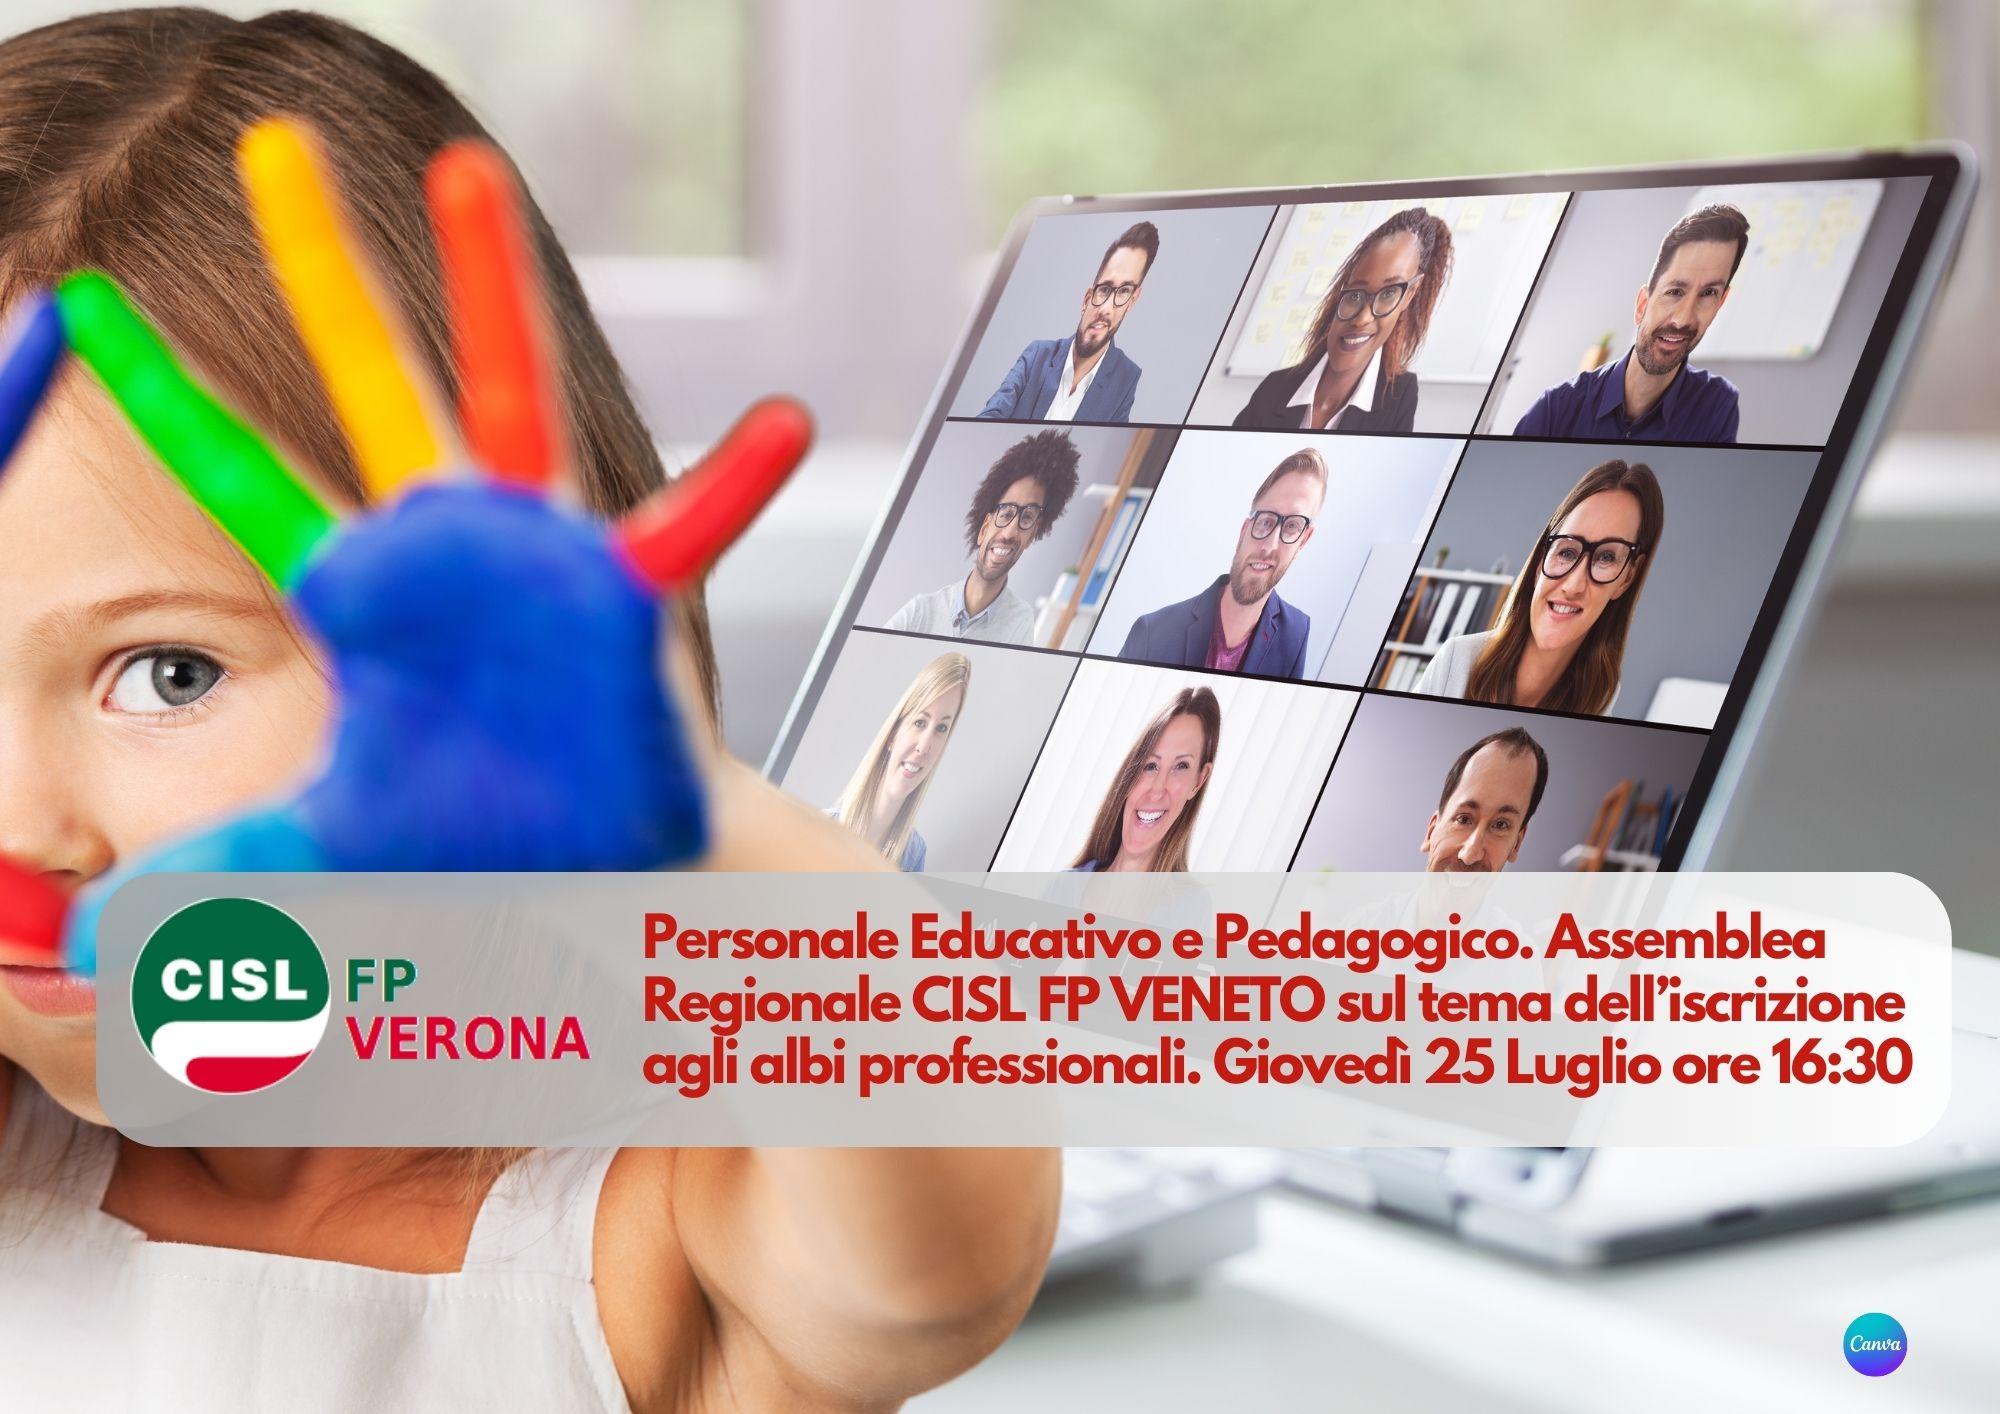 CISL FP Verona. Personale educativo e pedagogico: 25 luglio ore 16 assemblea regionale sul tema dell'ordinamento